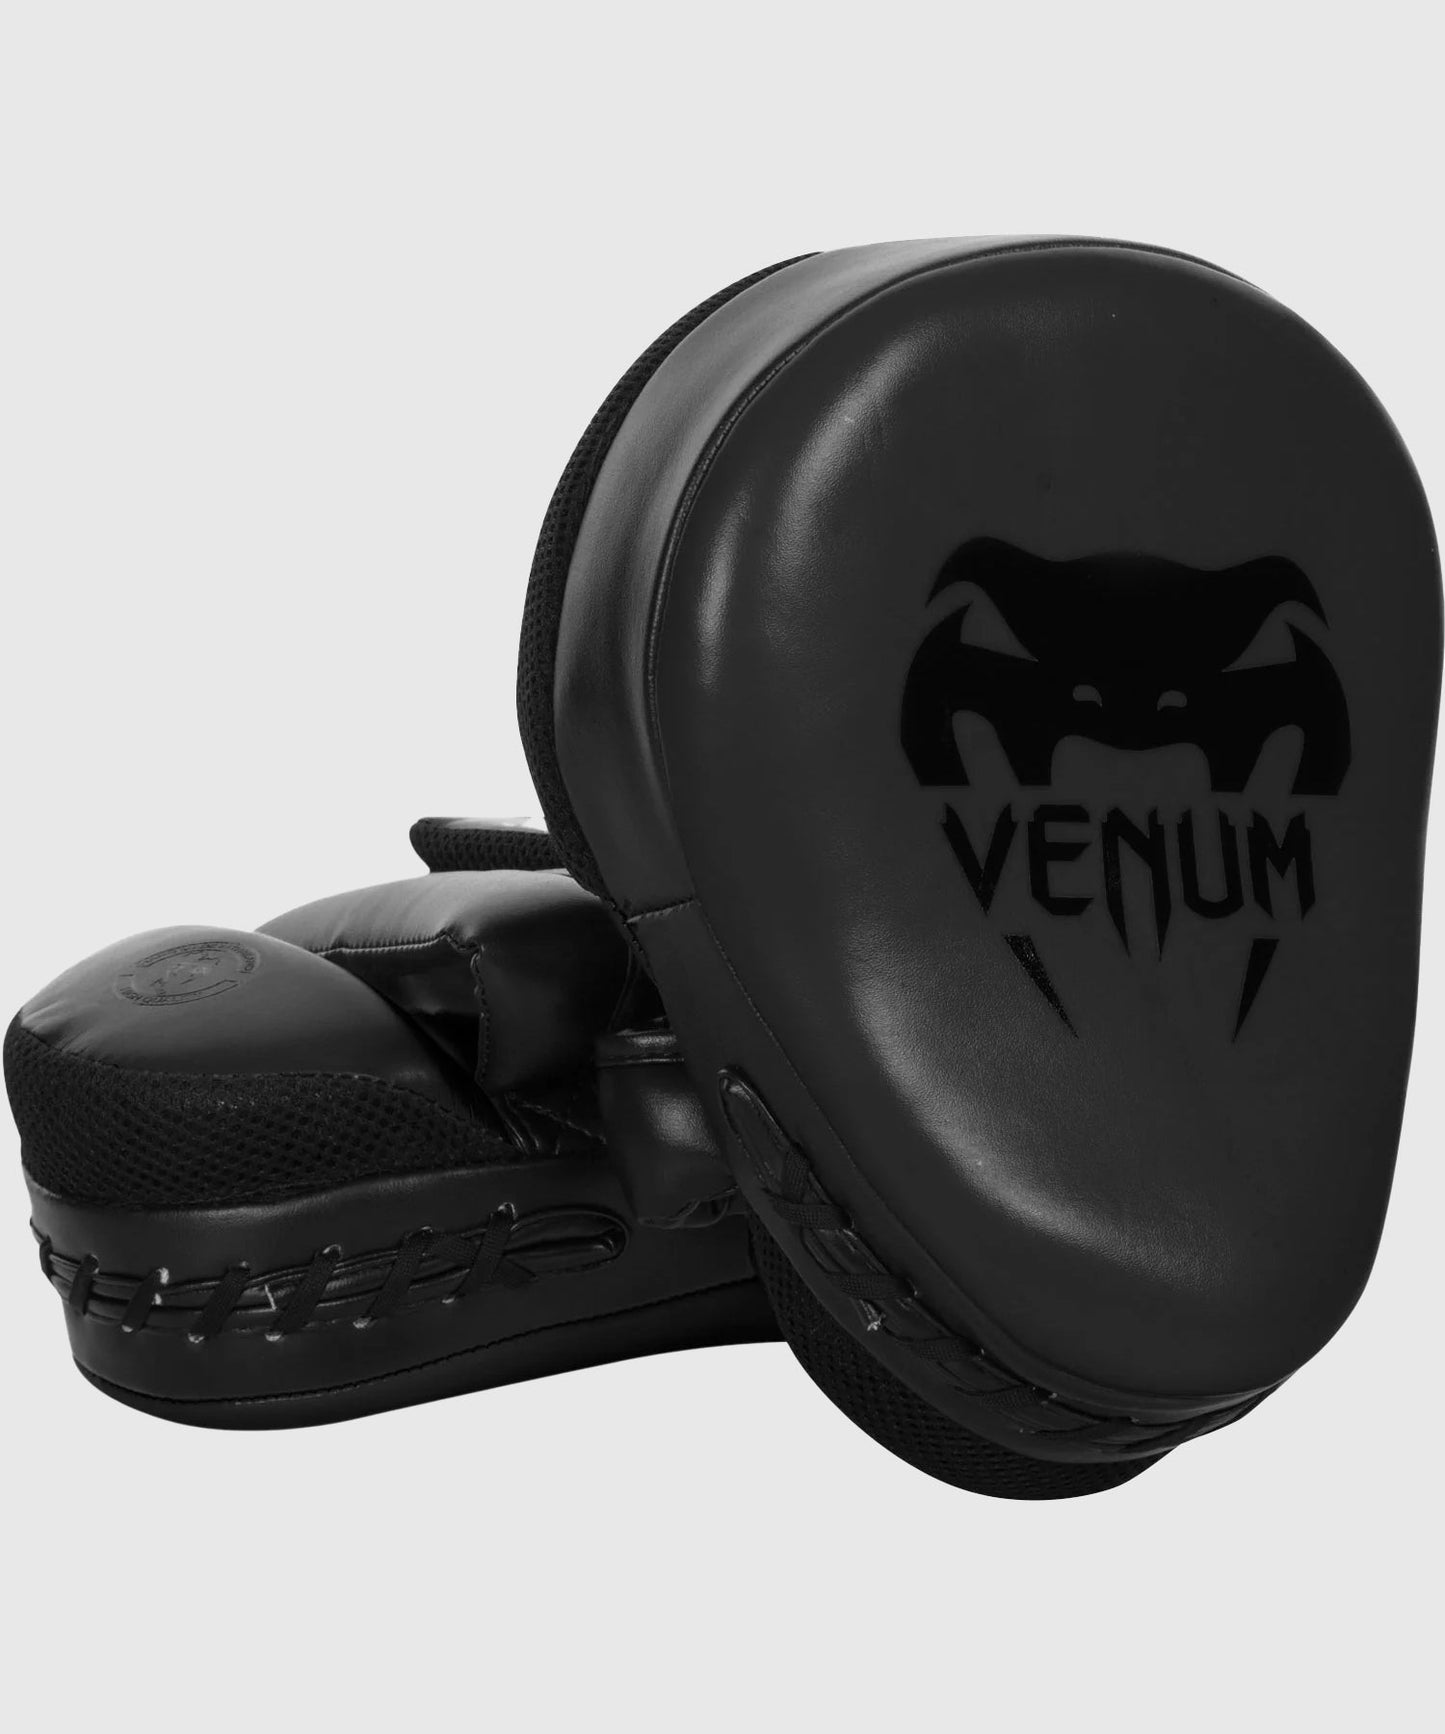 Venum Focus Mitts Cellular 2.0 - Matte/Black (Pair)